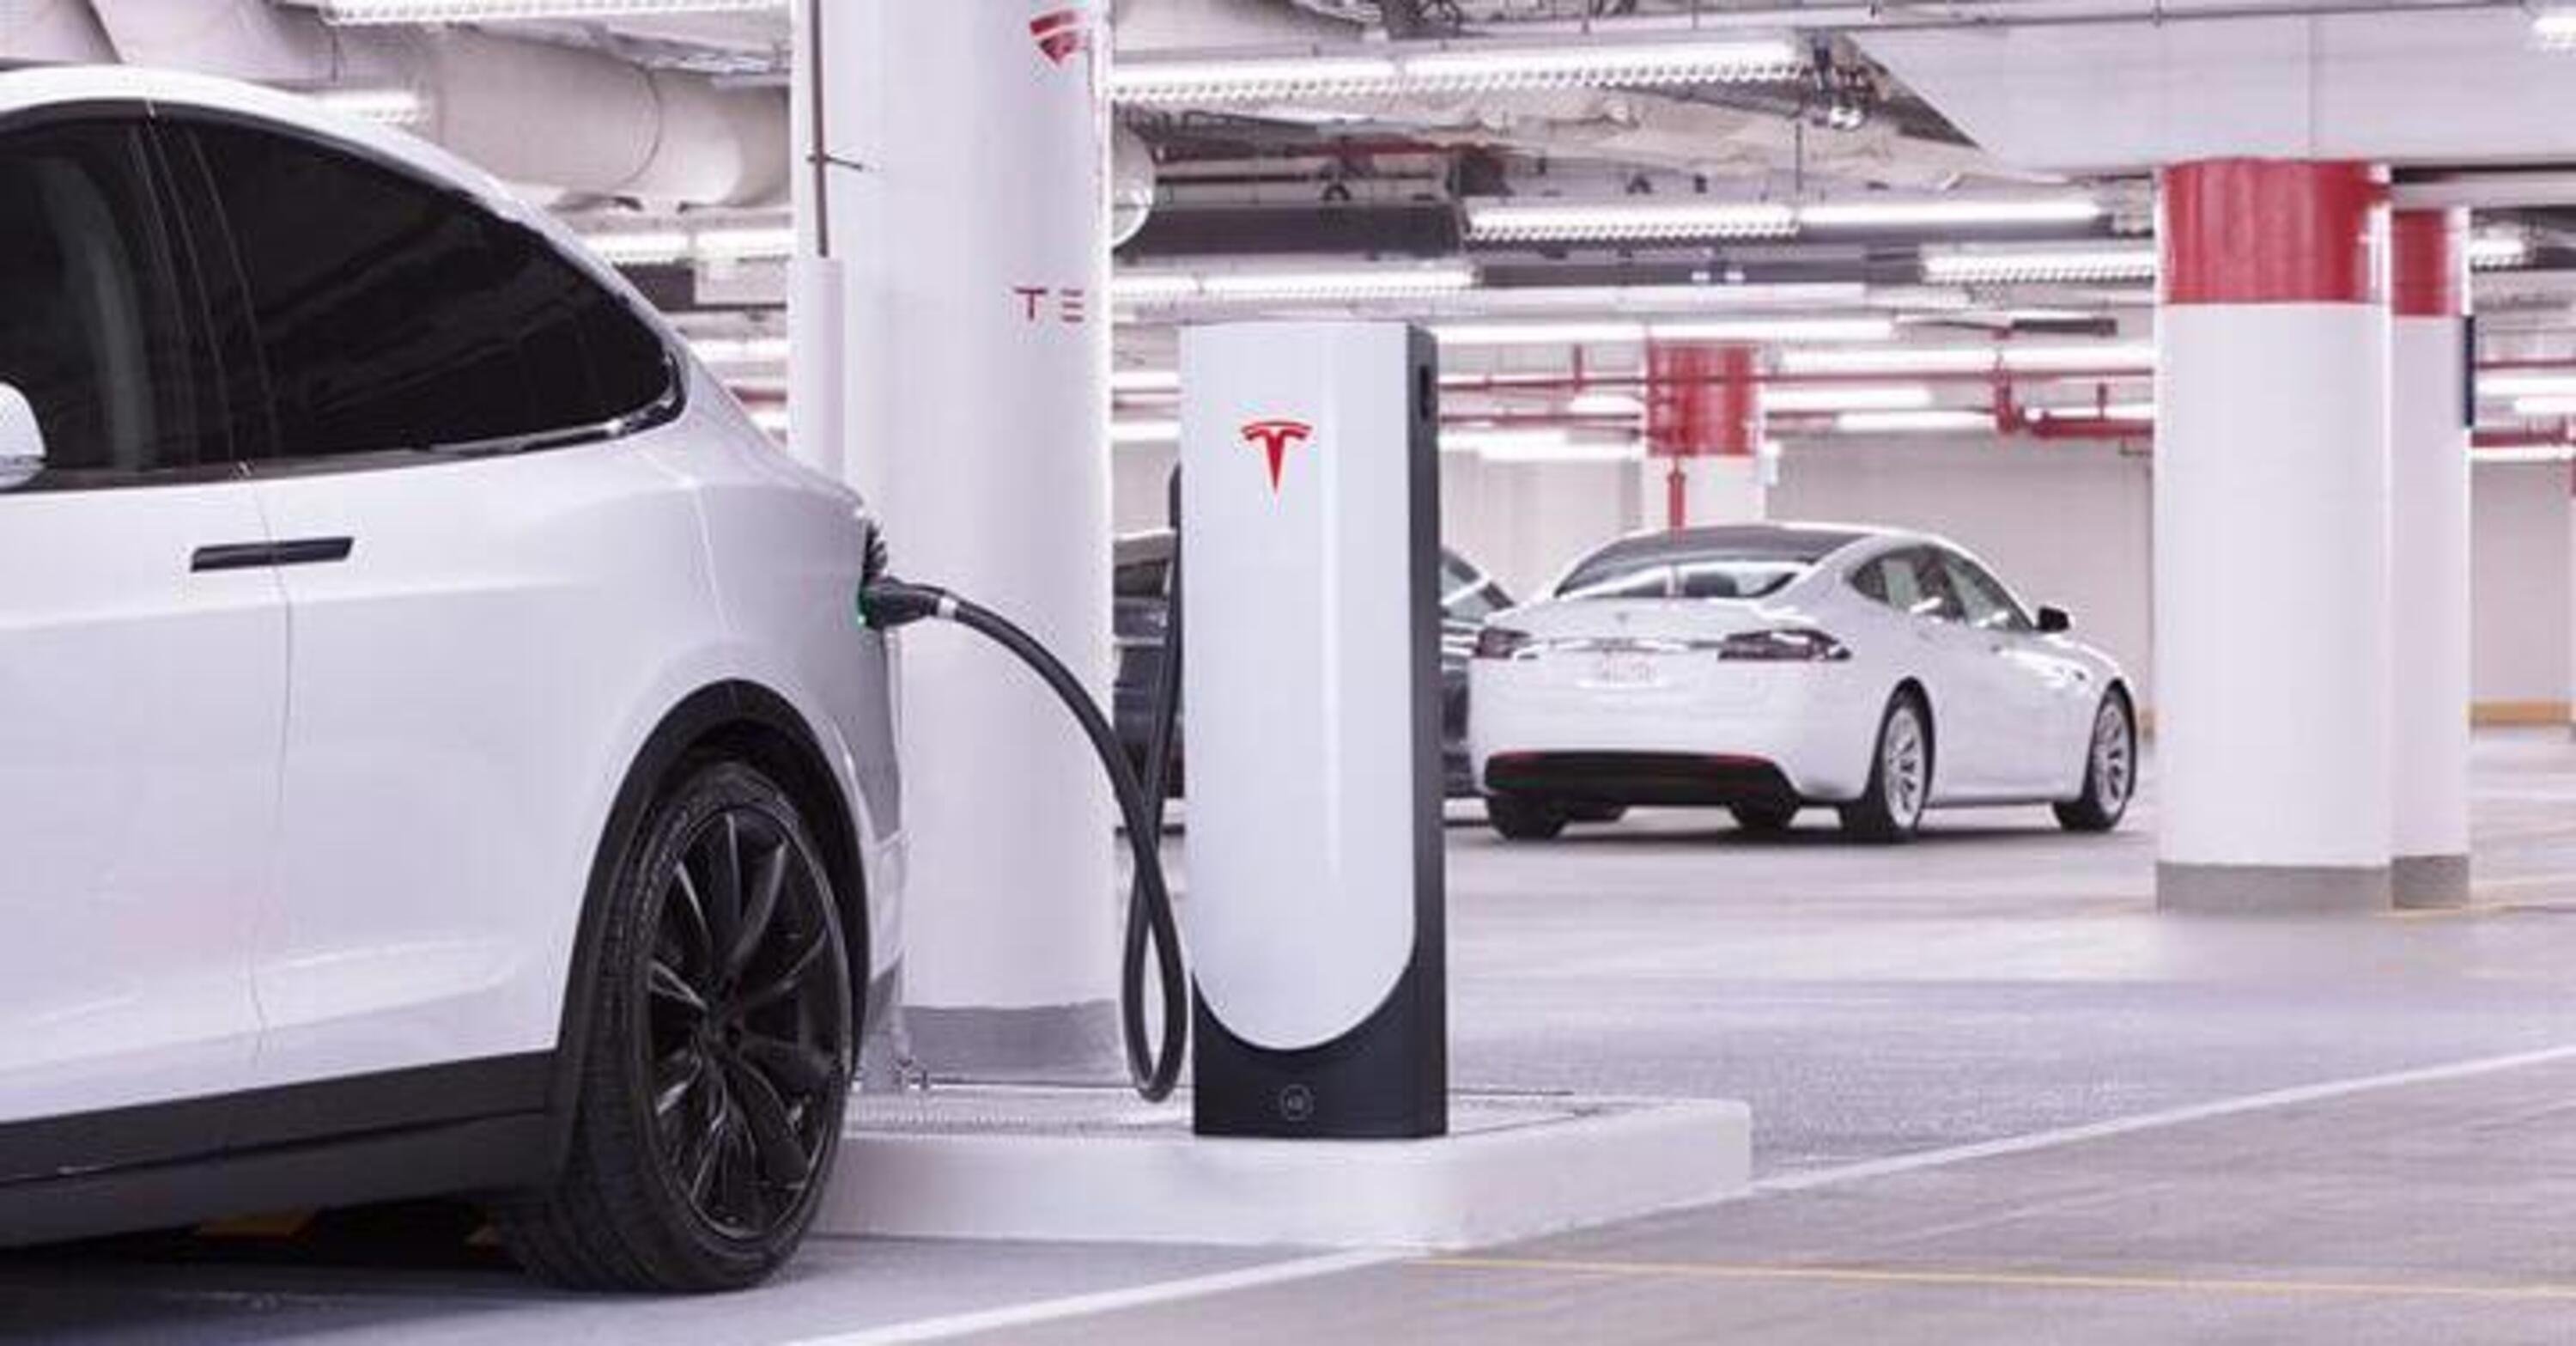 Supercharger, in Olanda il costo per le auto non Tesla &egrave; di 0,59 euro/kWh 